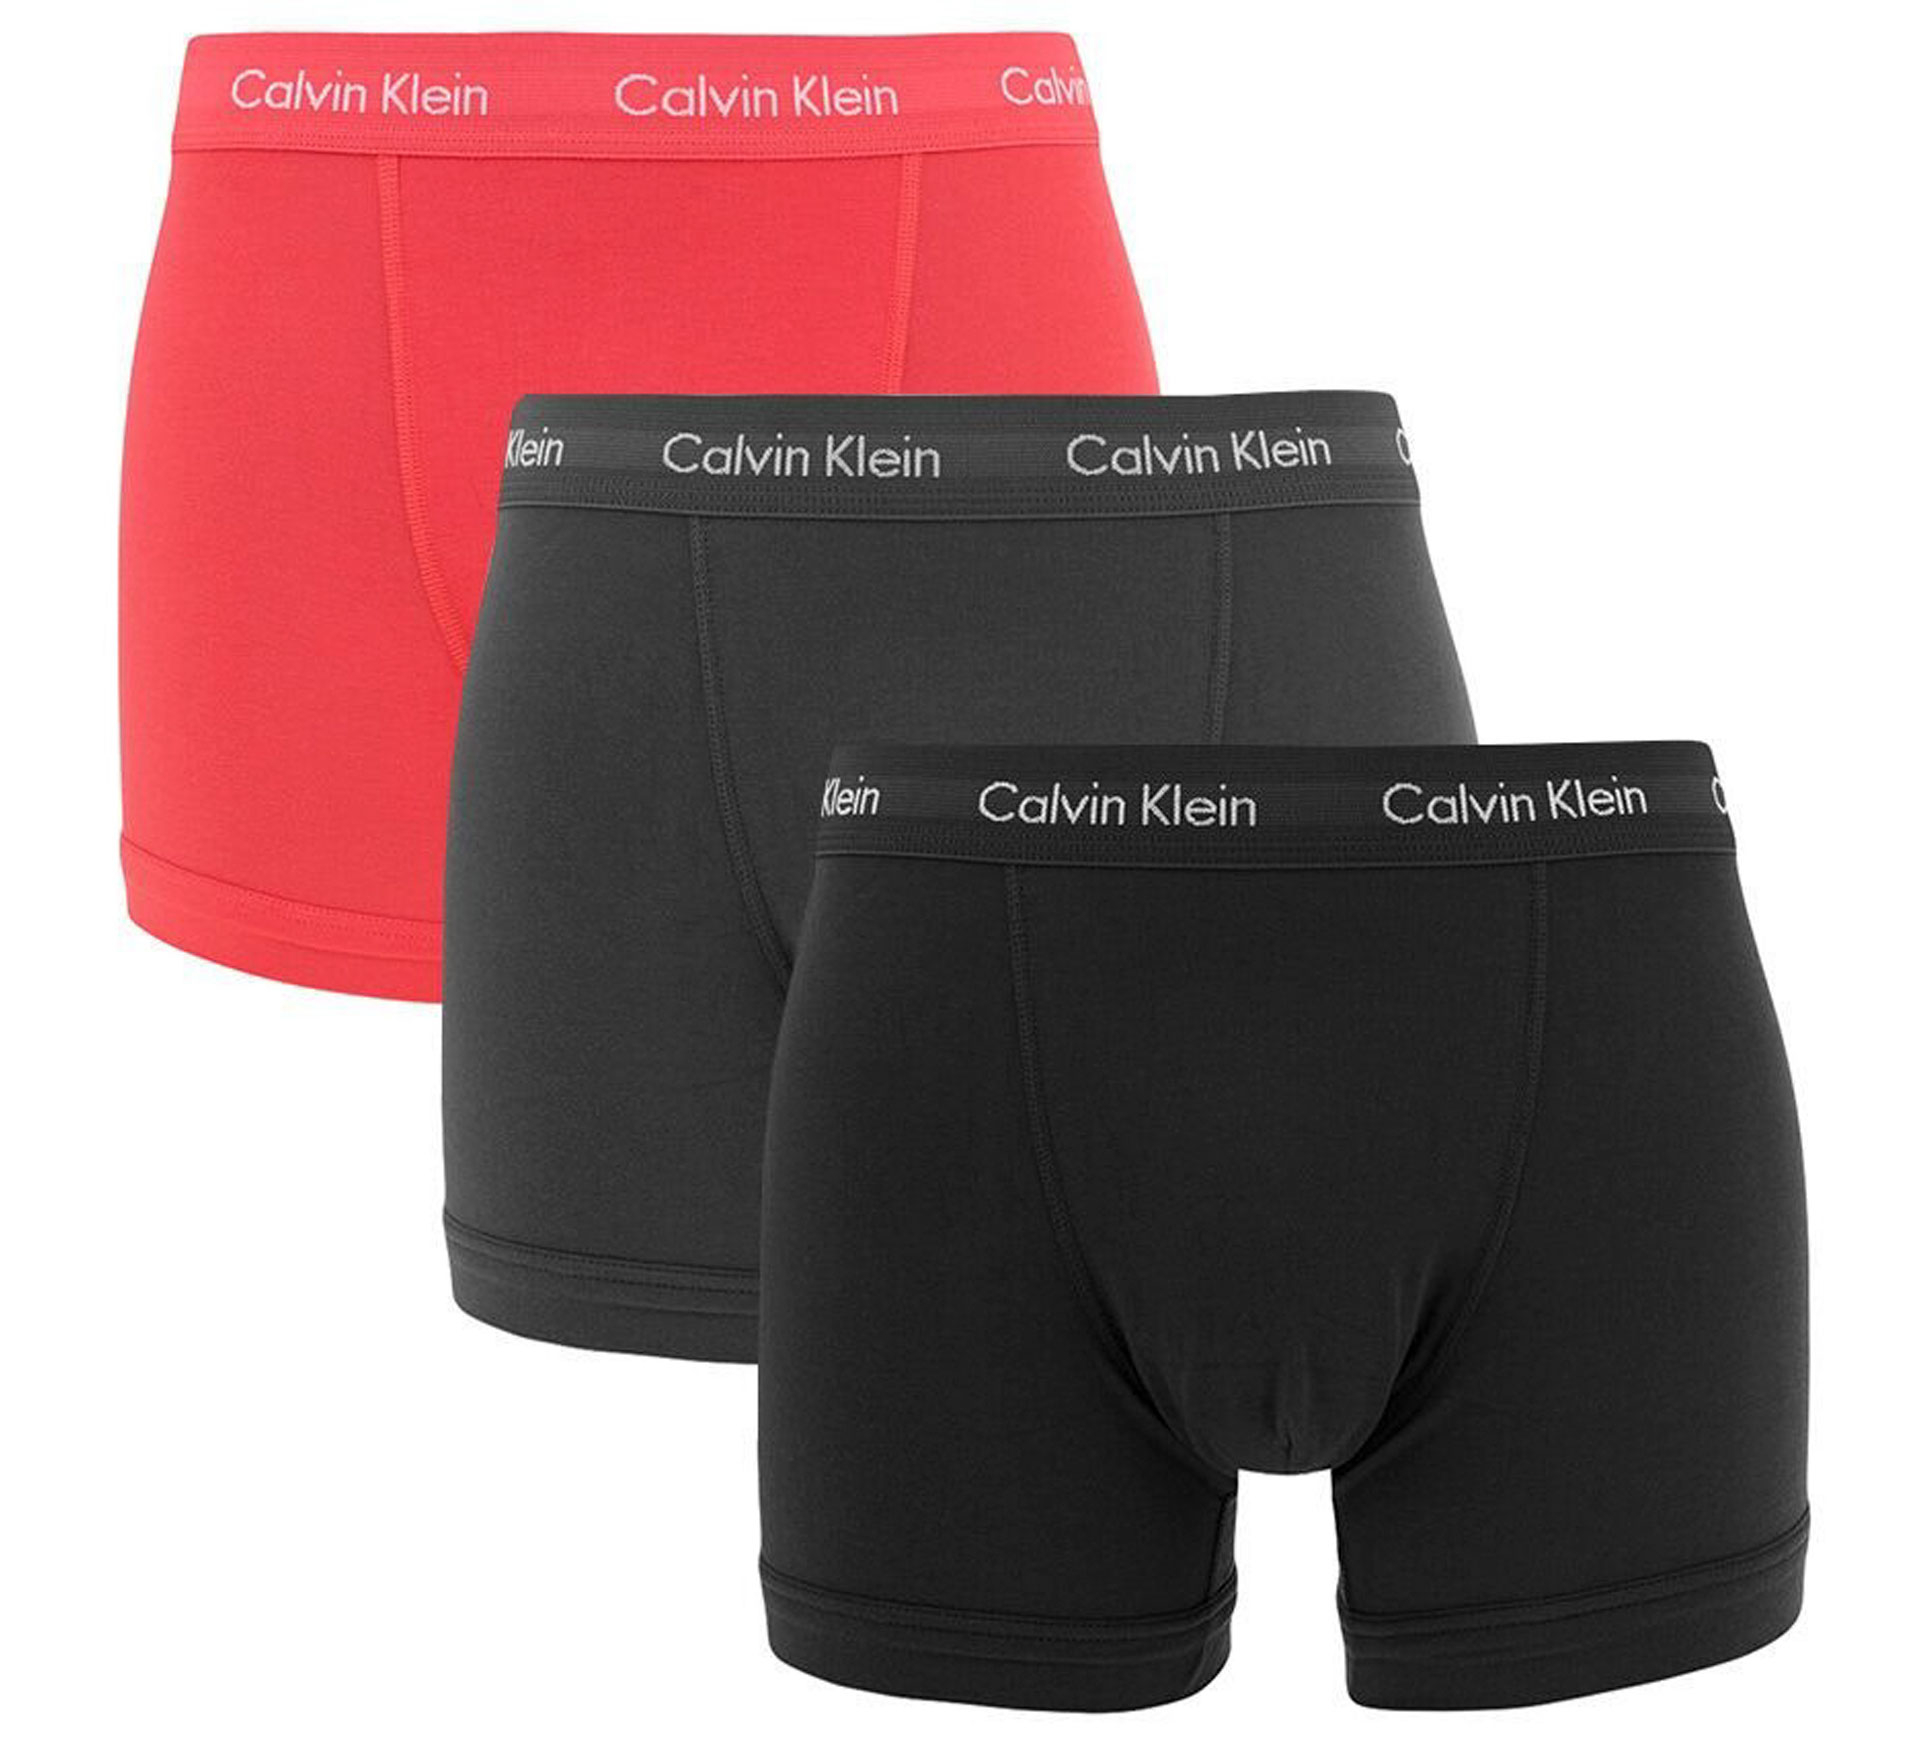 Boxer-shorts Calvin Klein Trunk (Lot de 3)